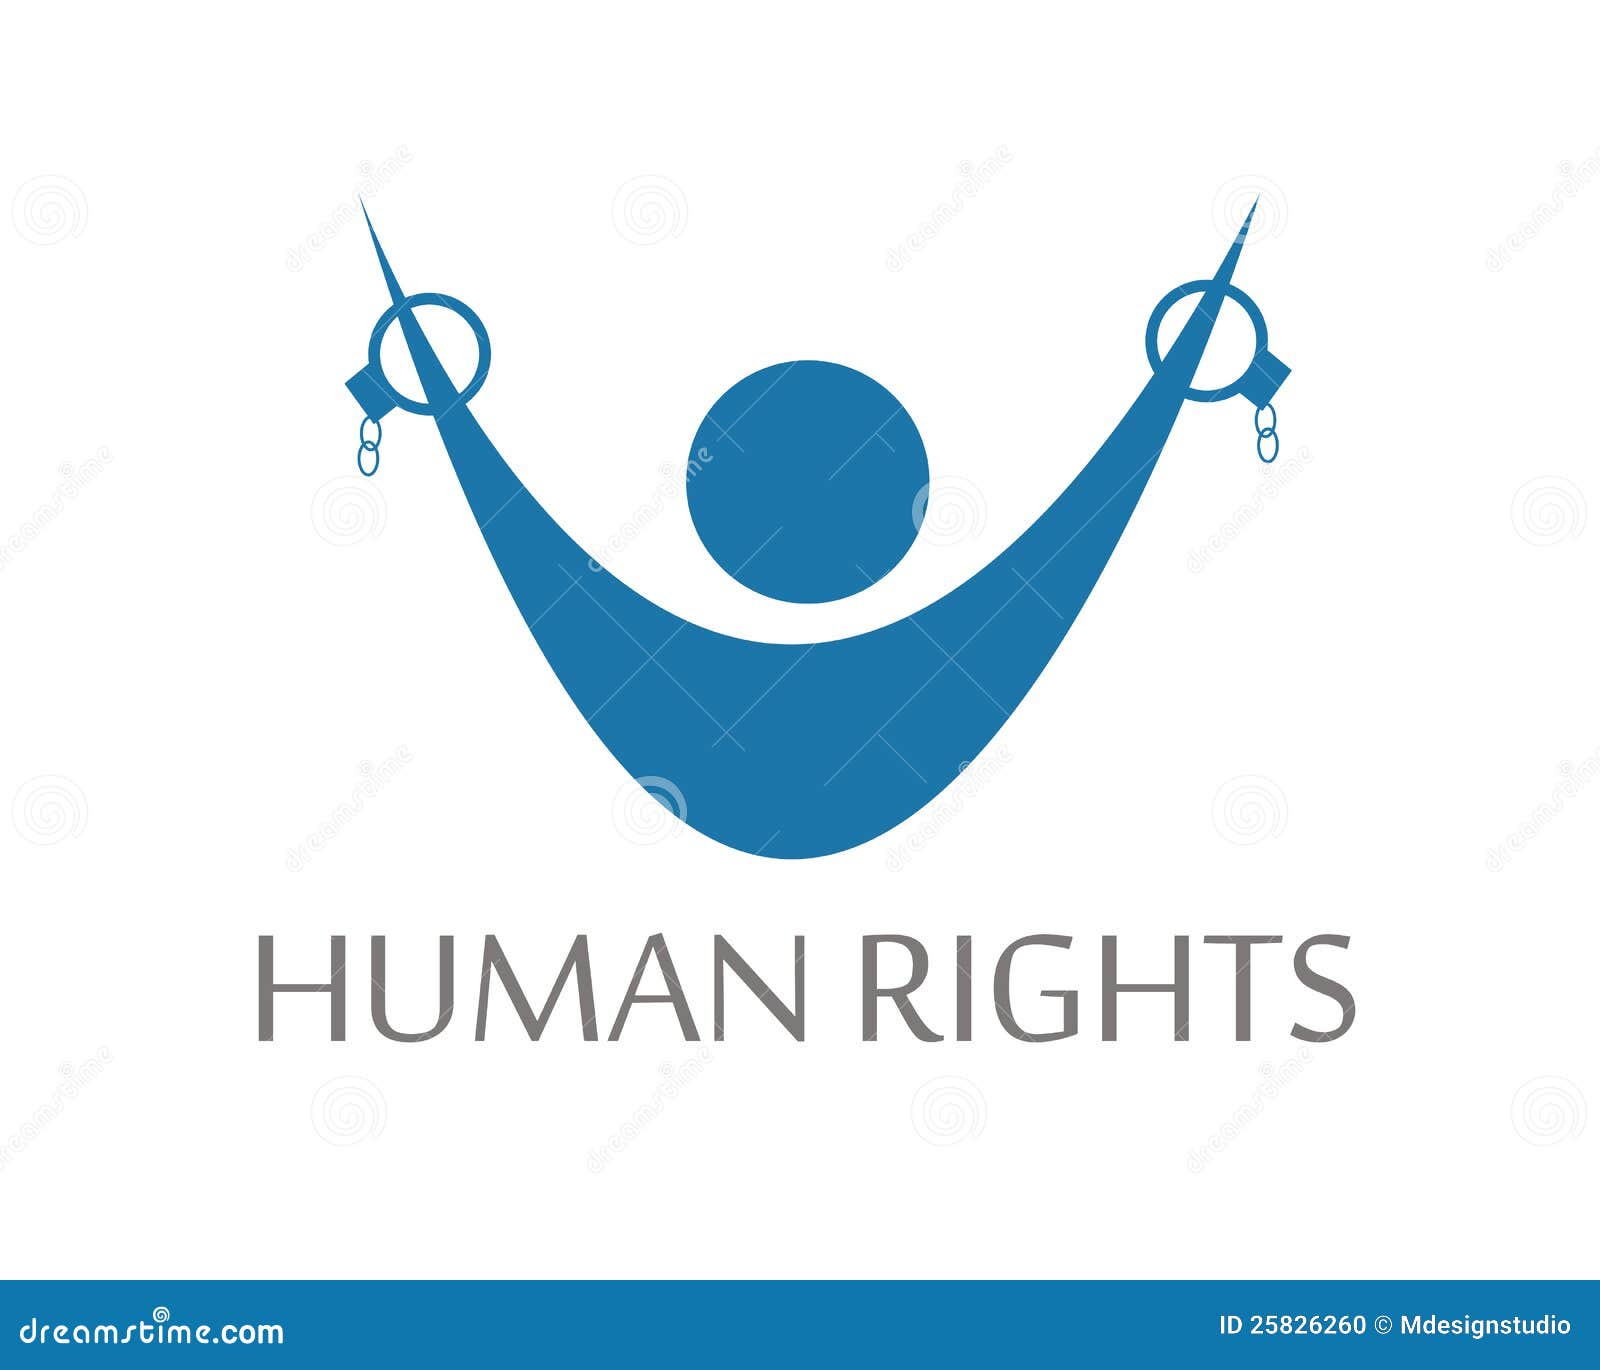 human rights 3